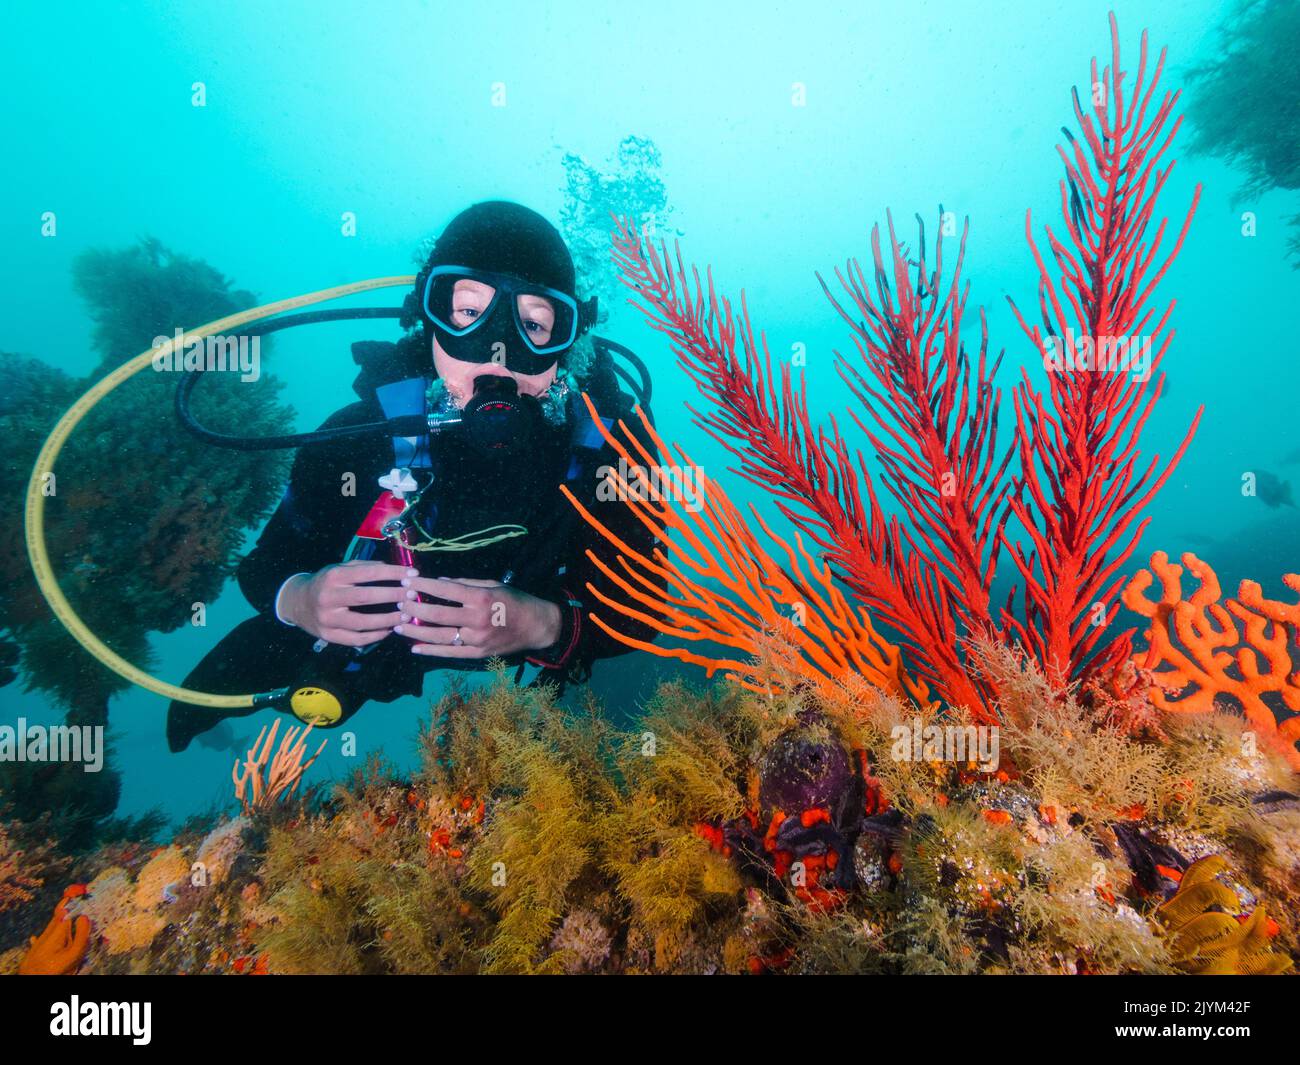 Un plongeur qui regarde la caméra se pose à côté de fans de la mer aux couleurs vives sous l'eau Banque D'Images